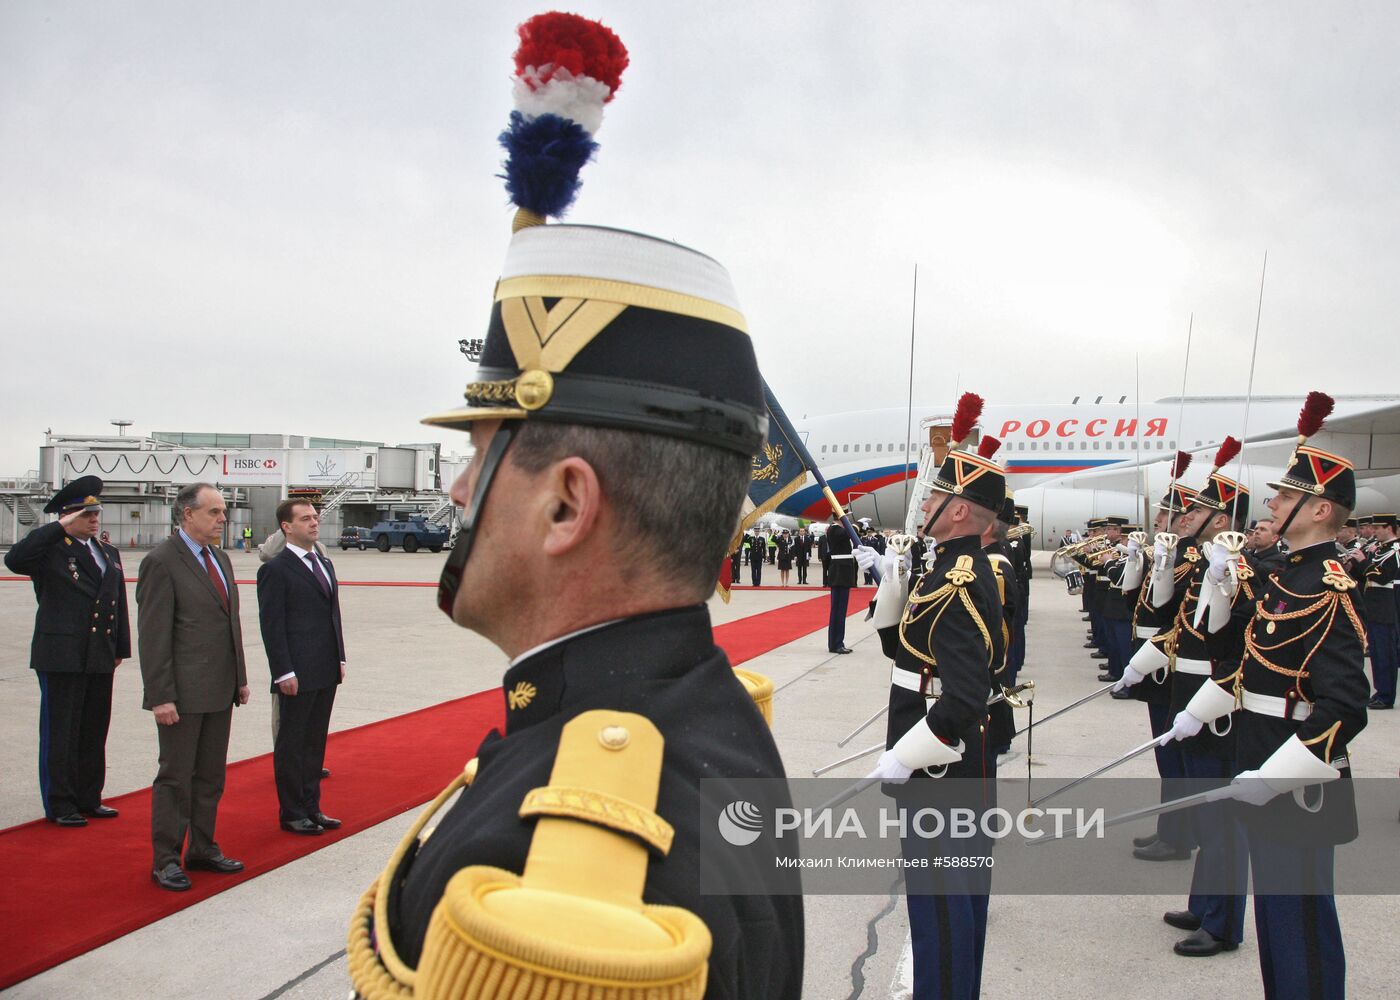 Д.Медведев с официальным визитом в Париже